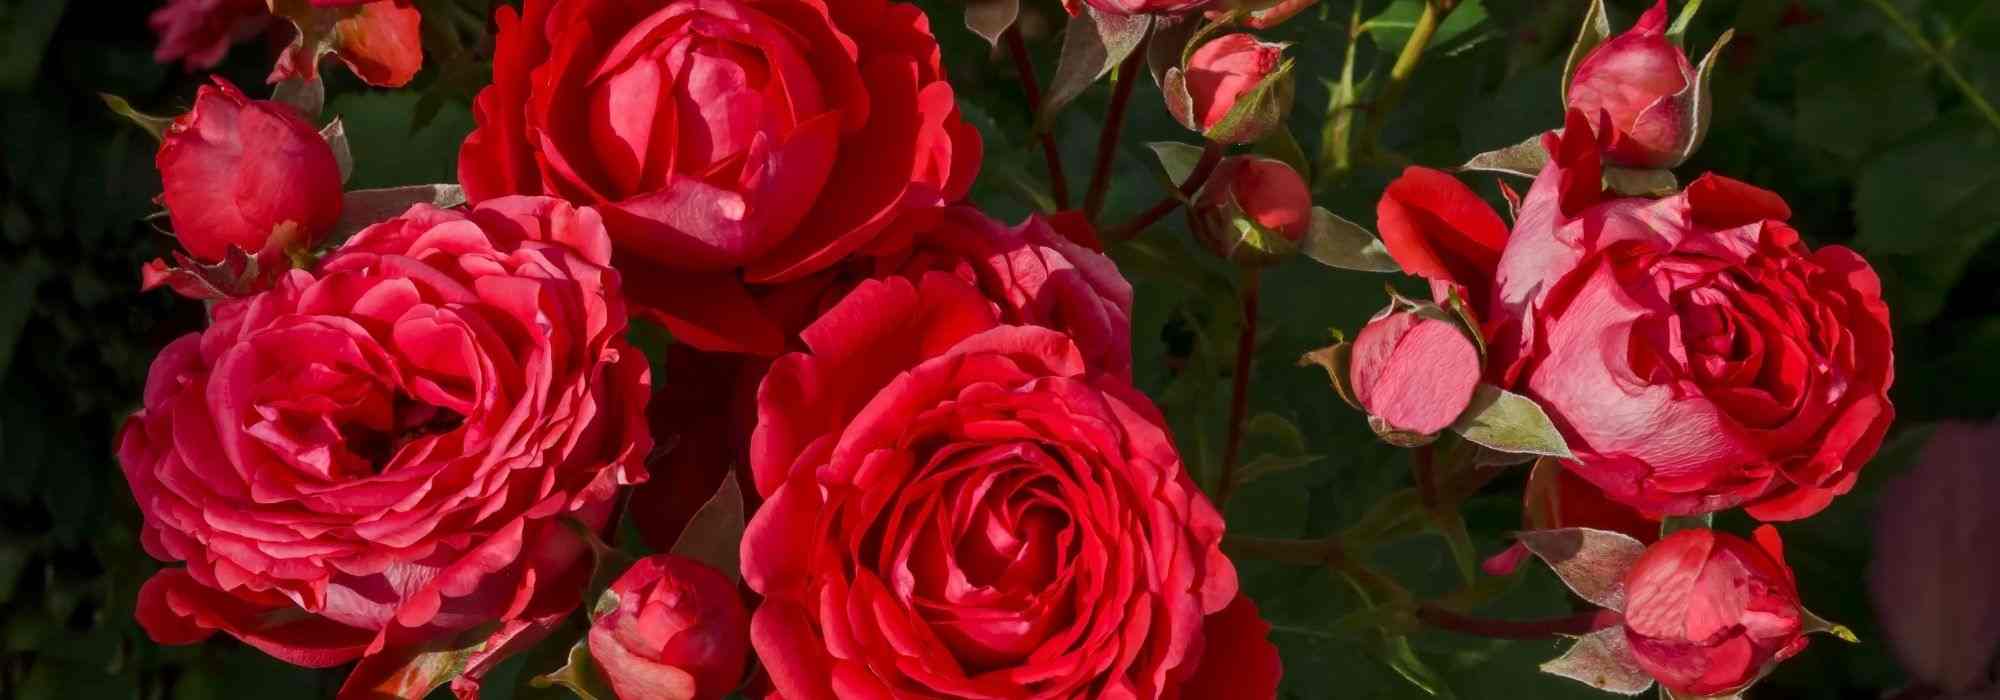 6 rosiers buissons à grandes fleurs rouges